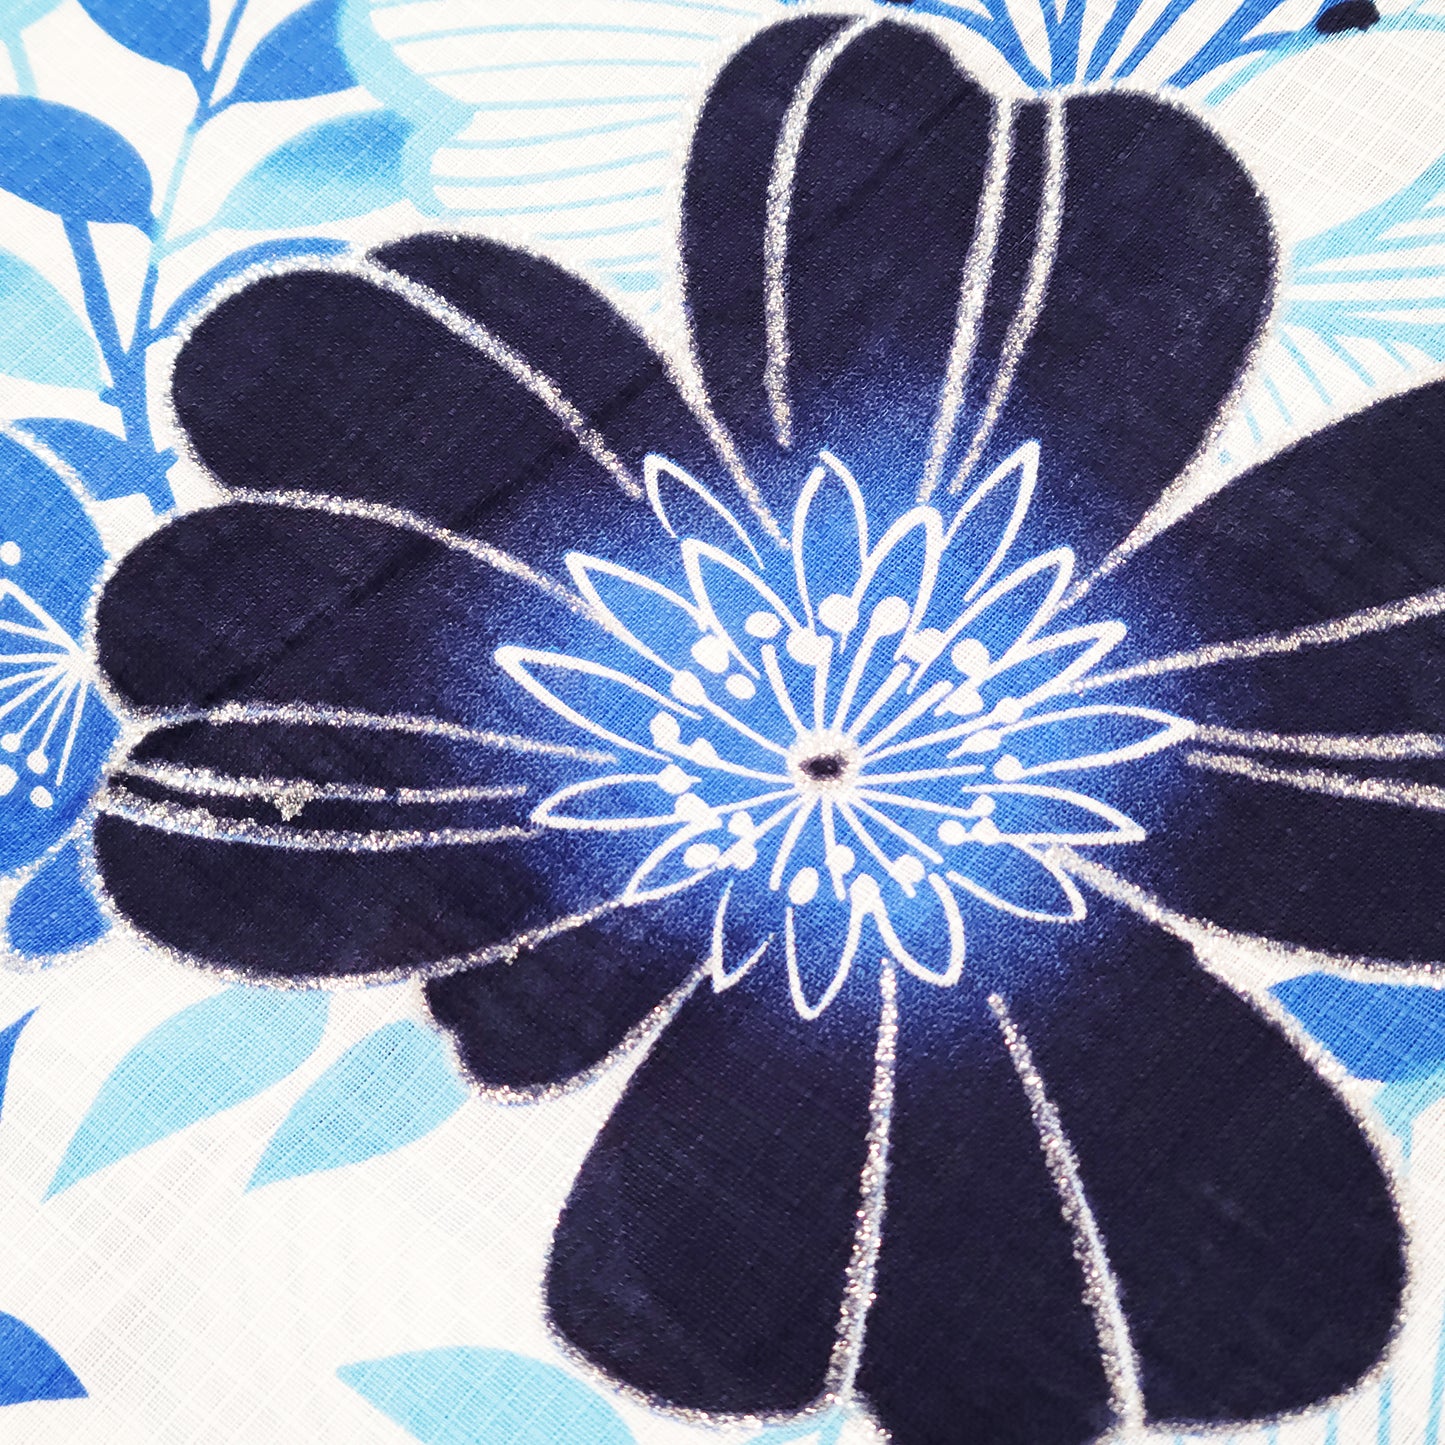 Women's Japanese Yukata Kimono - Blue Flowers in White